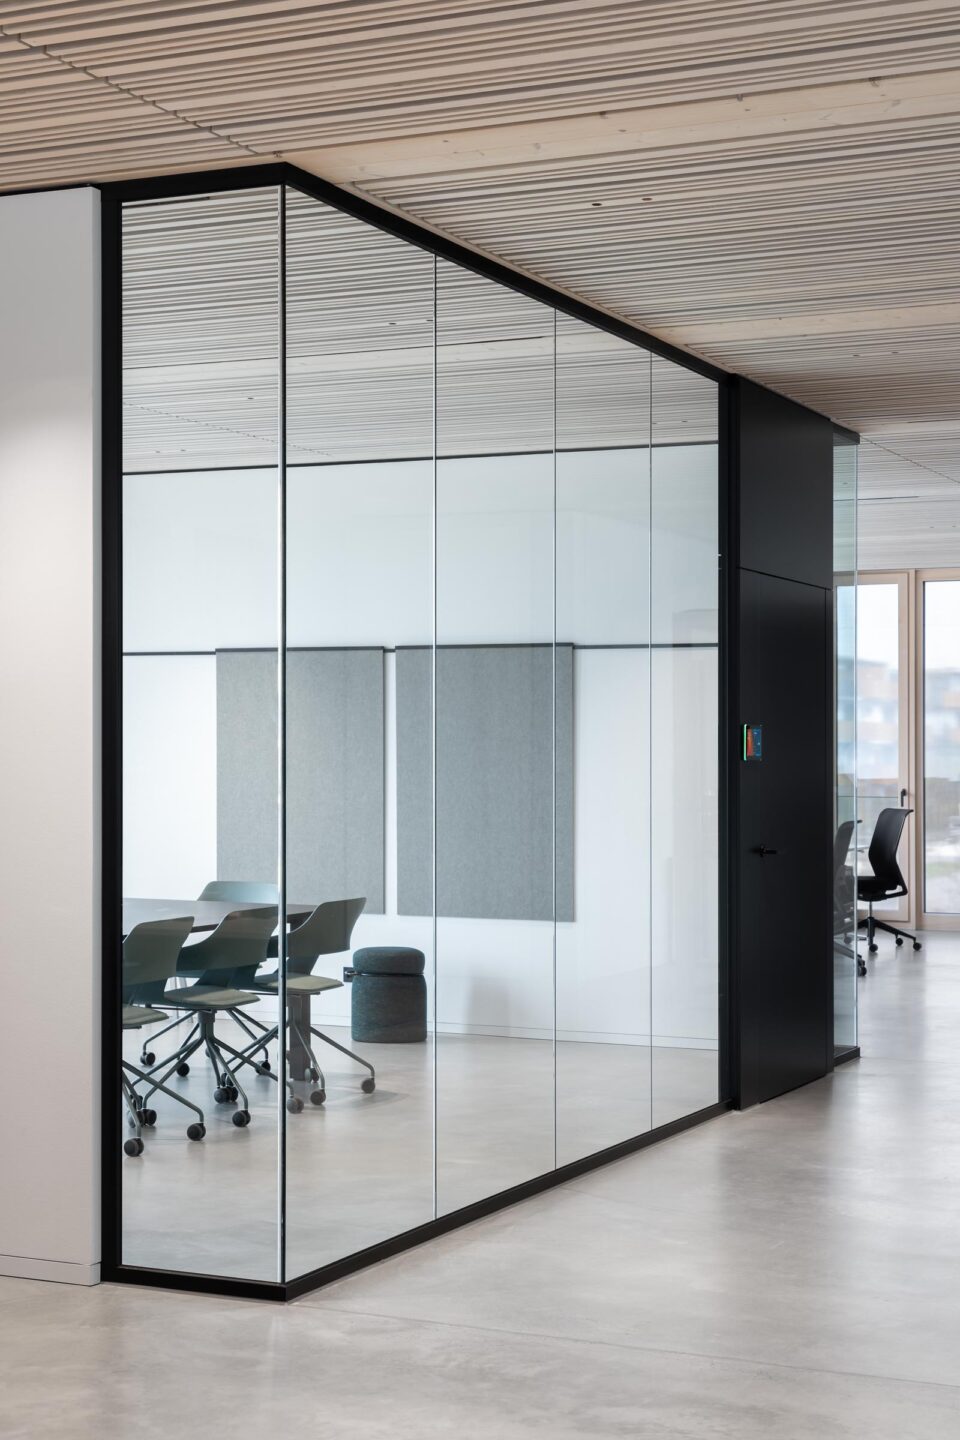 Architekturbüro Nething | Glaswände eines Konferenzraums